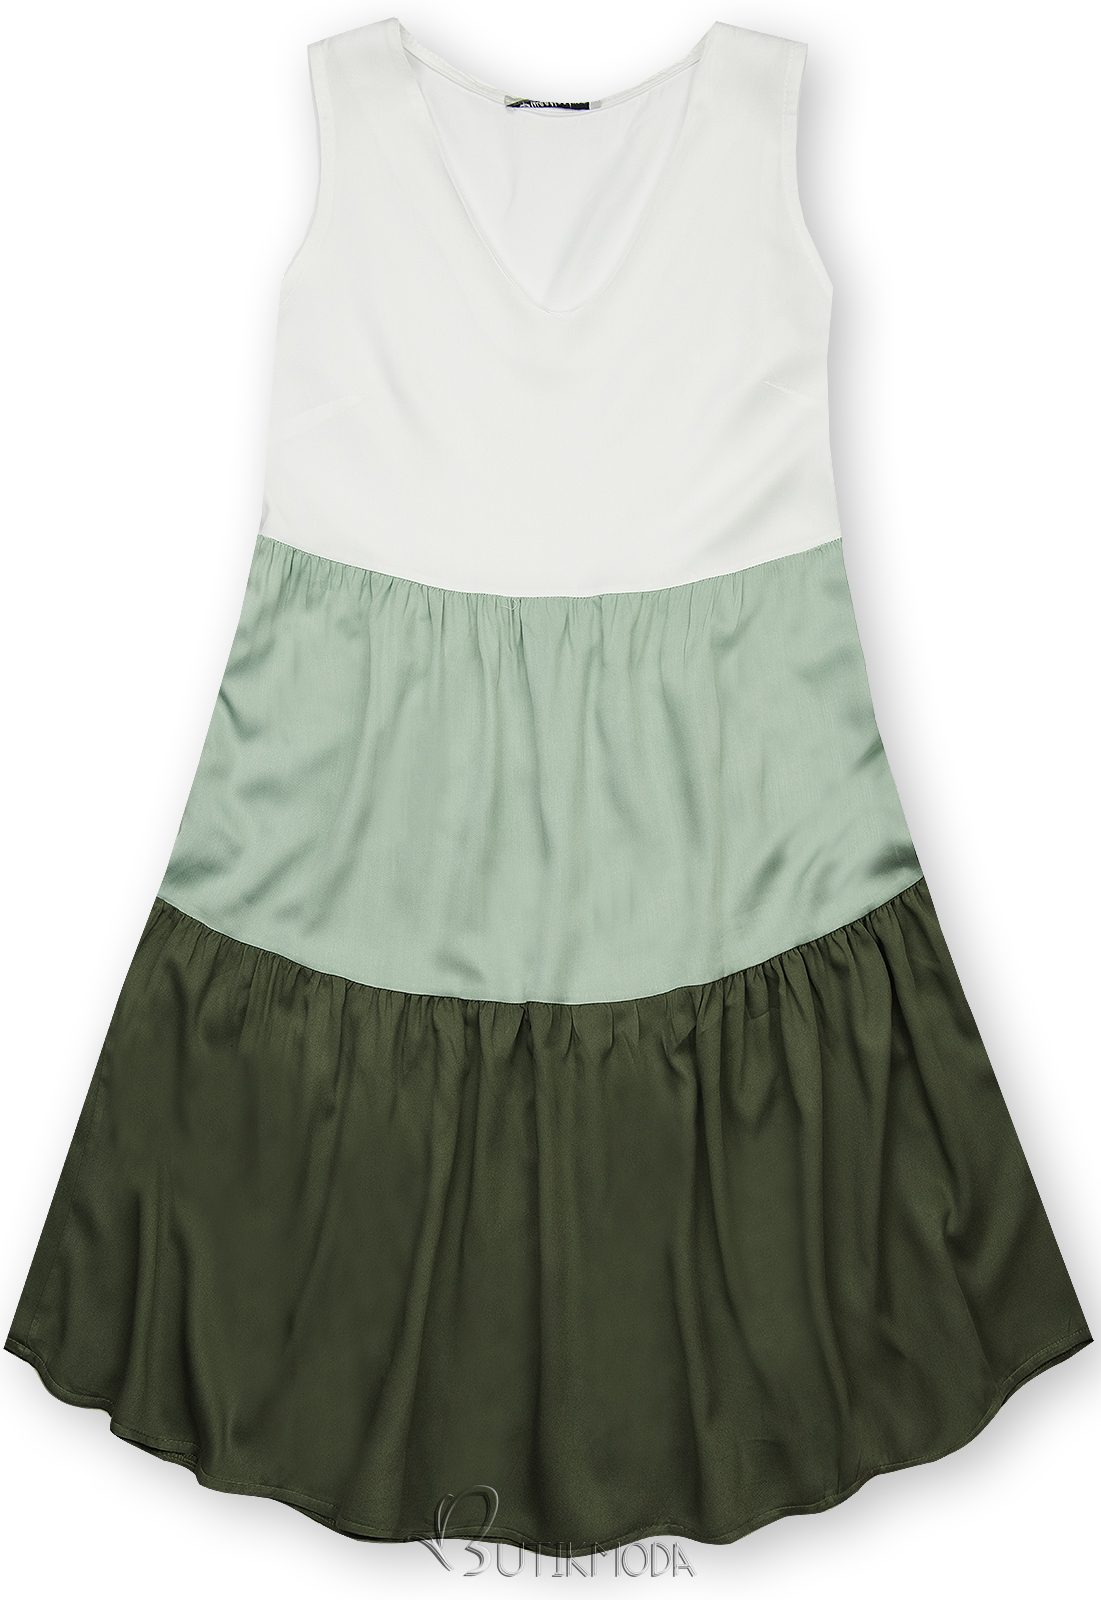 Fehér, mentazöld és zöld színű nyári viszkóz ruha